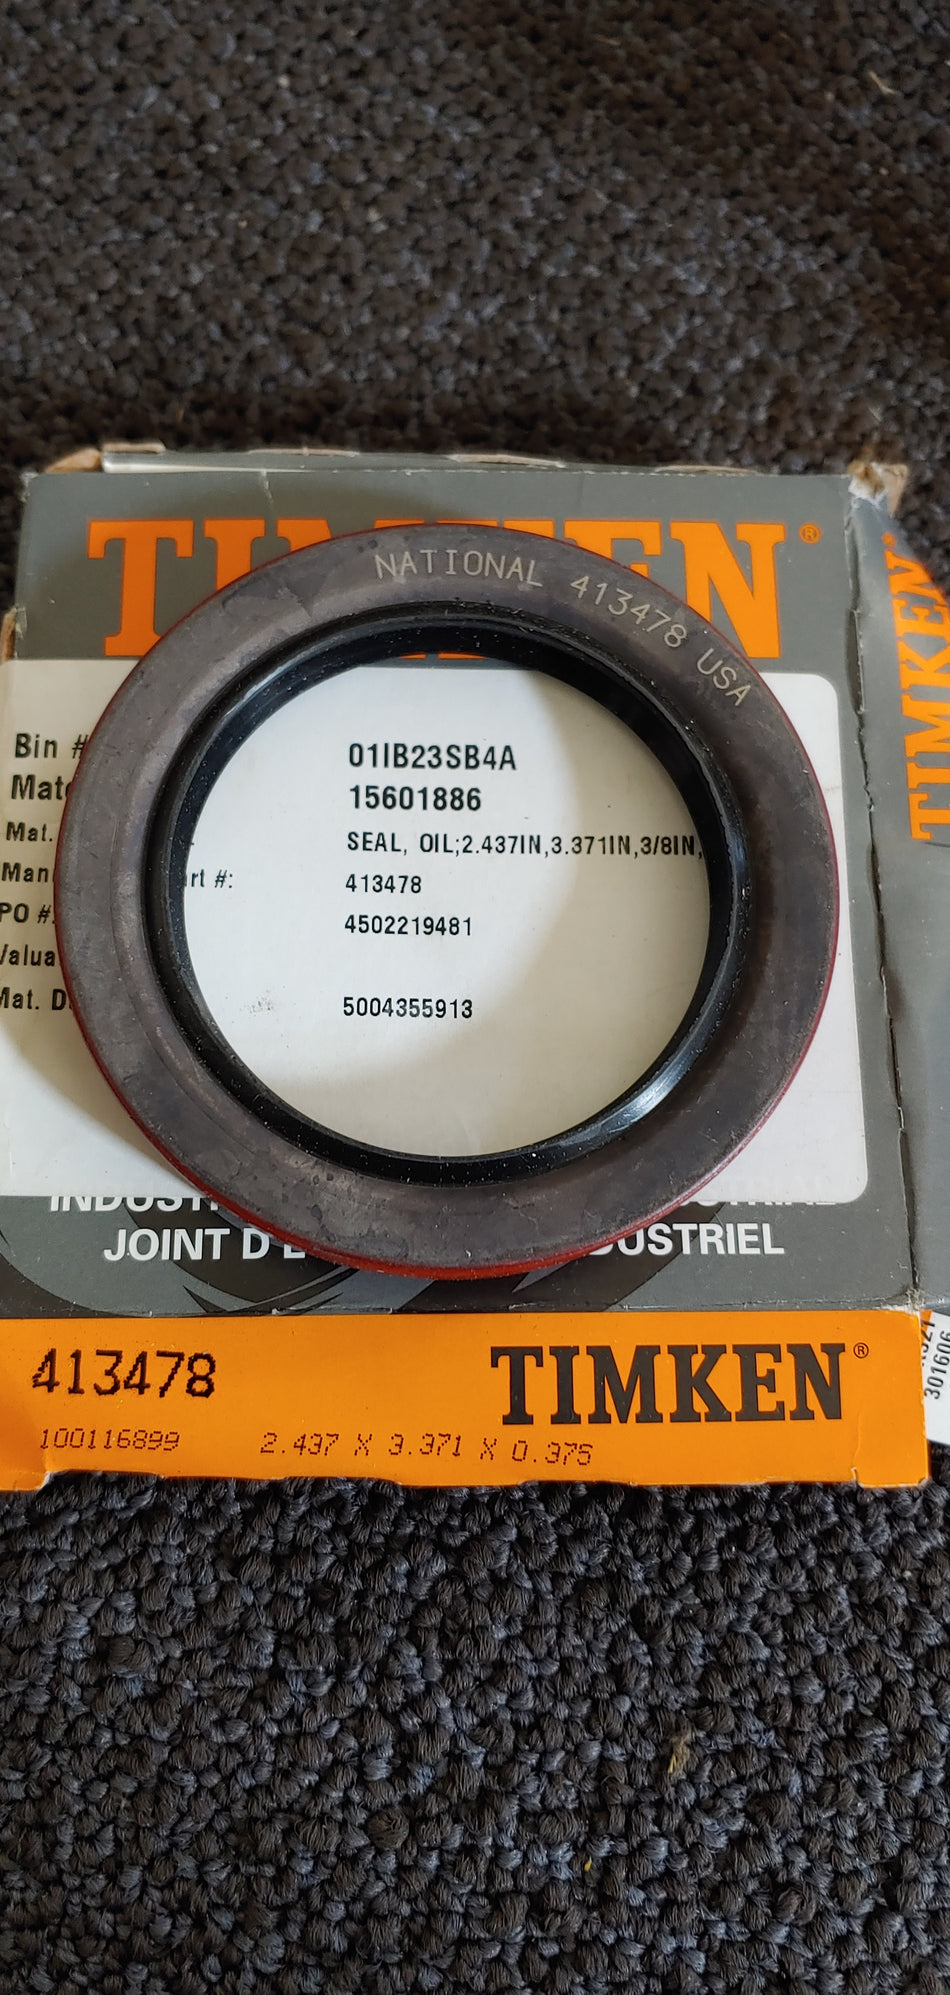 National Timken 413478 Seal